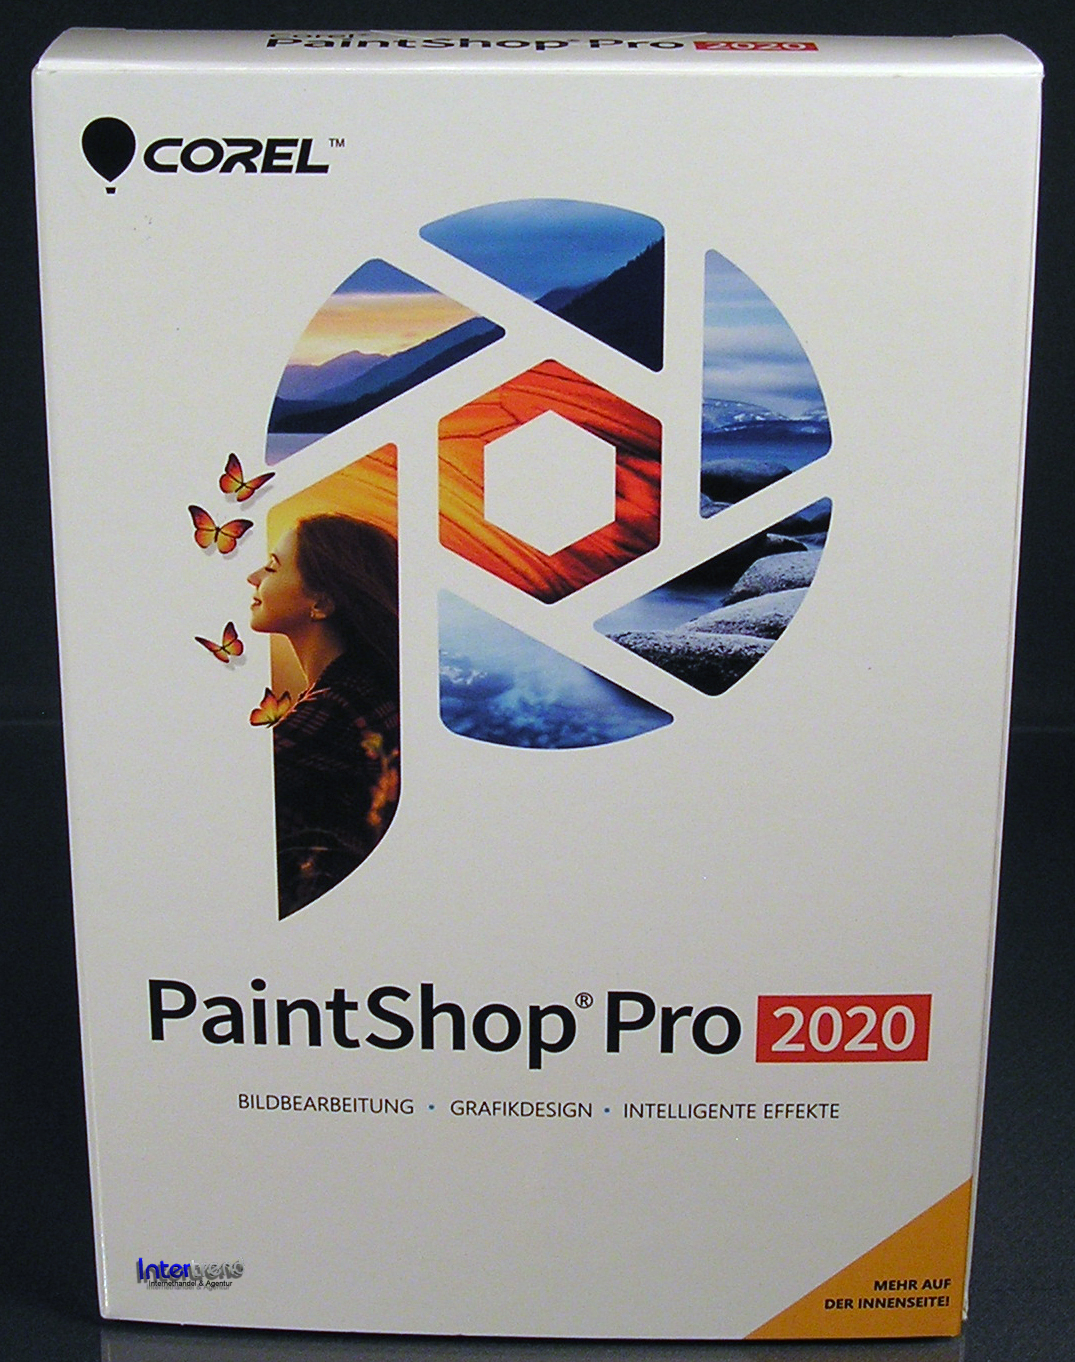 pow in paint shop pro 2020